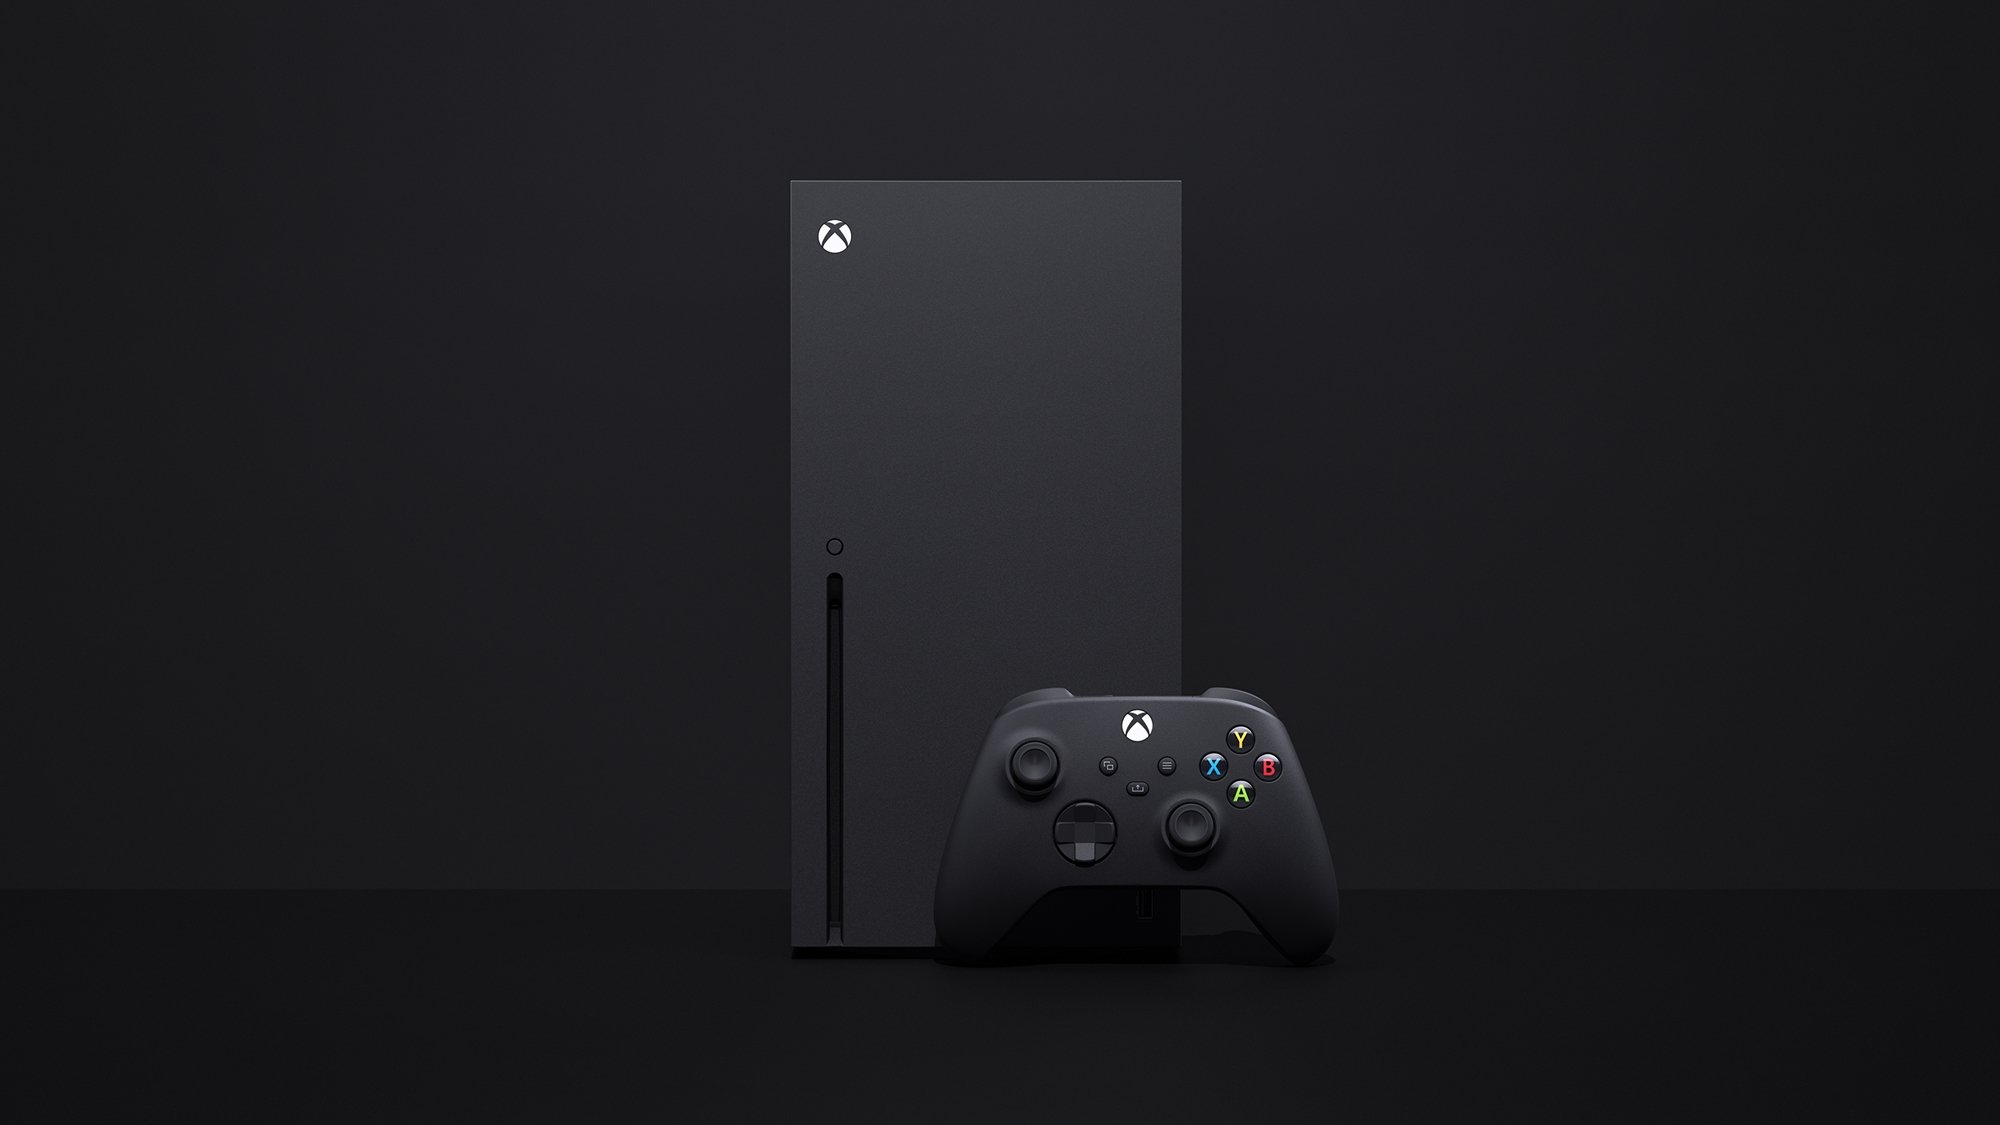 Gears 5 começa a forçar o crossplay entre Xbox e PC